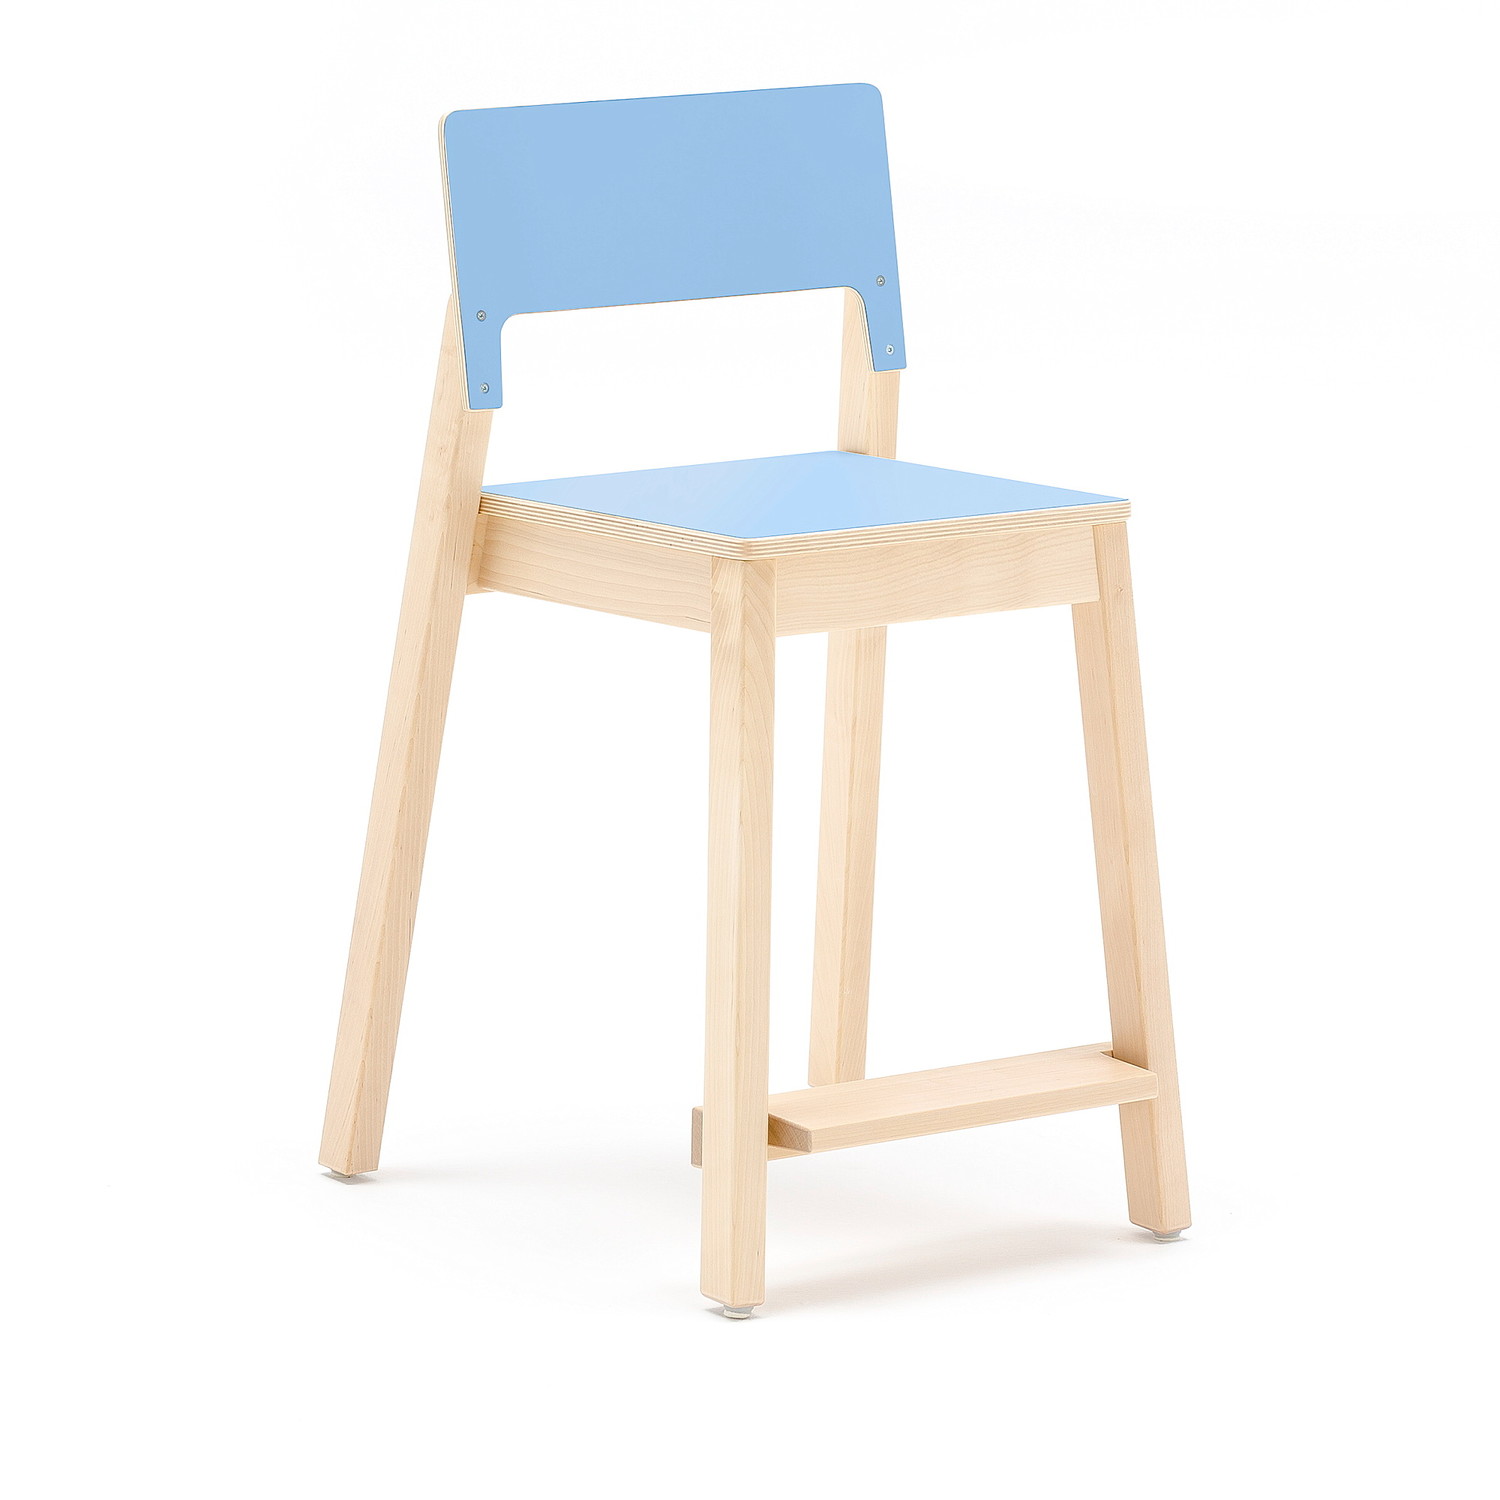 Vysoká dětská židle LOVE, výška 500 mm, bříza, modrá